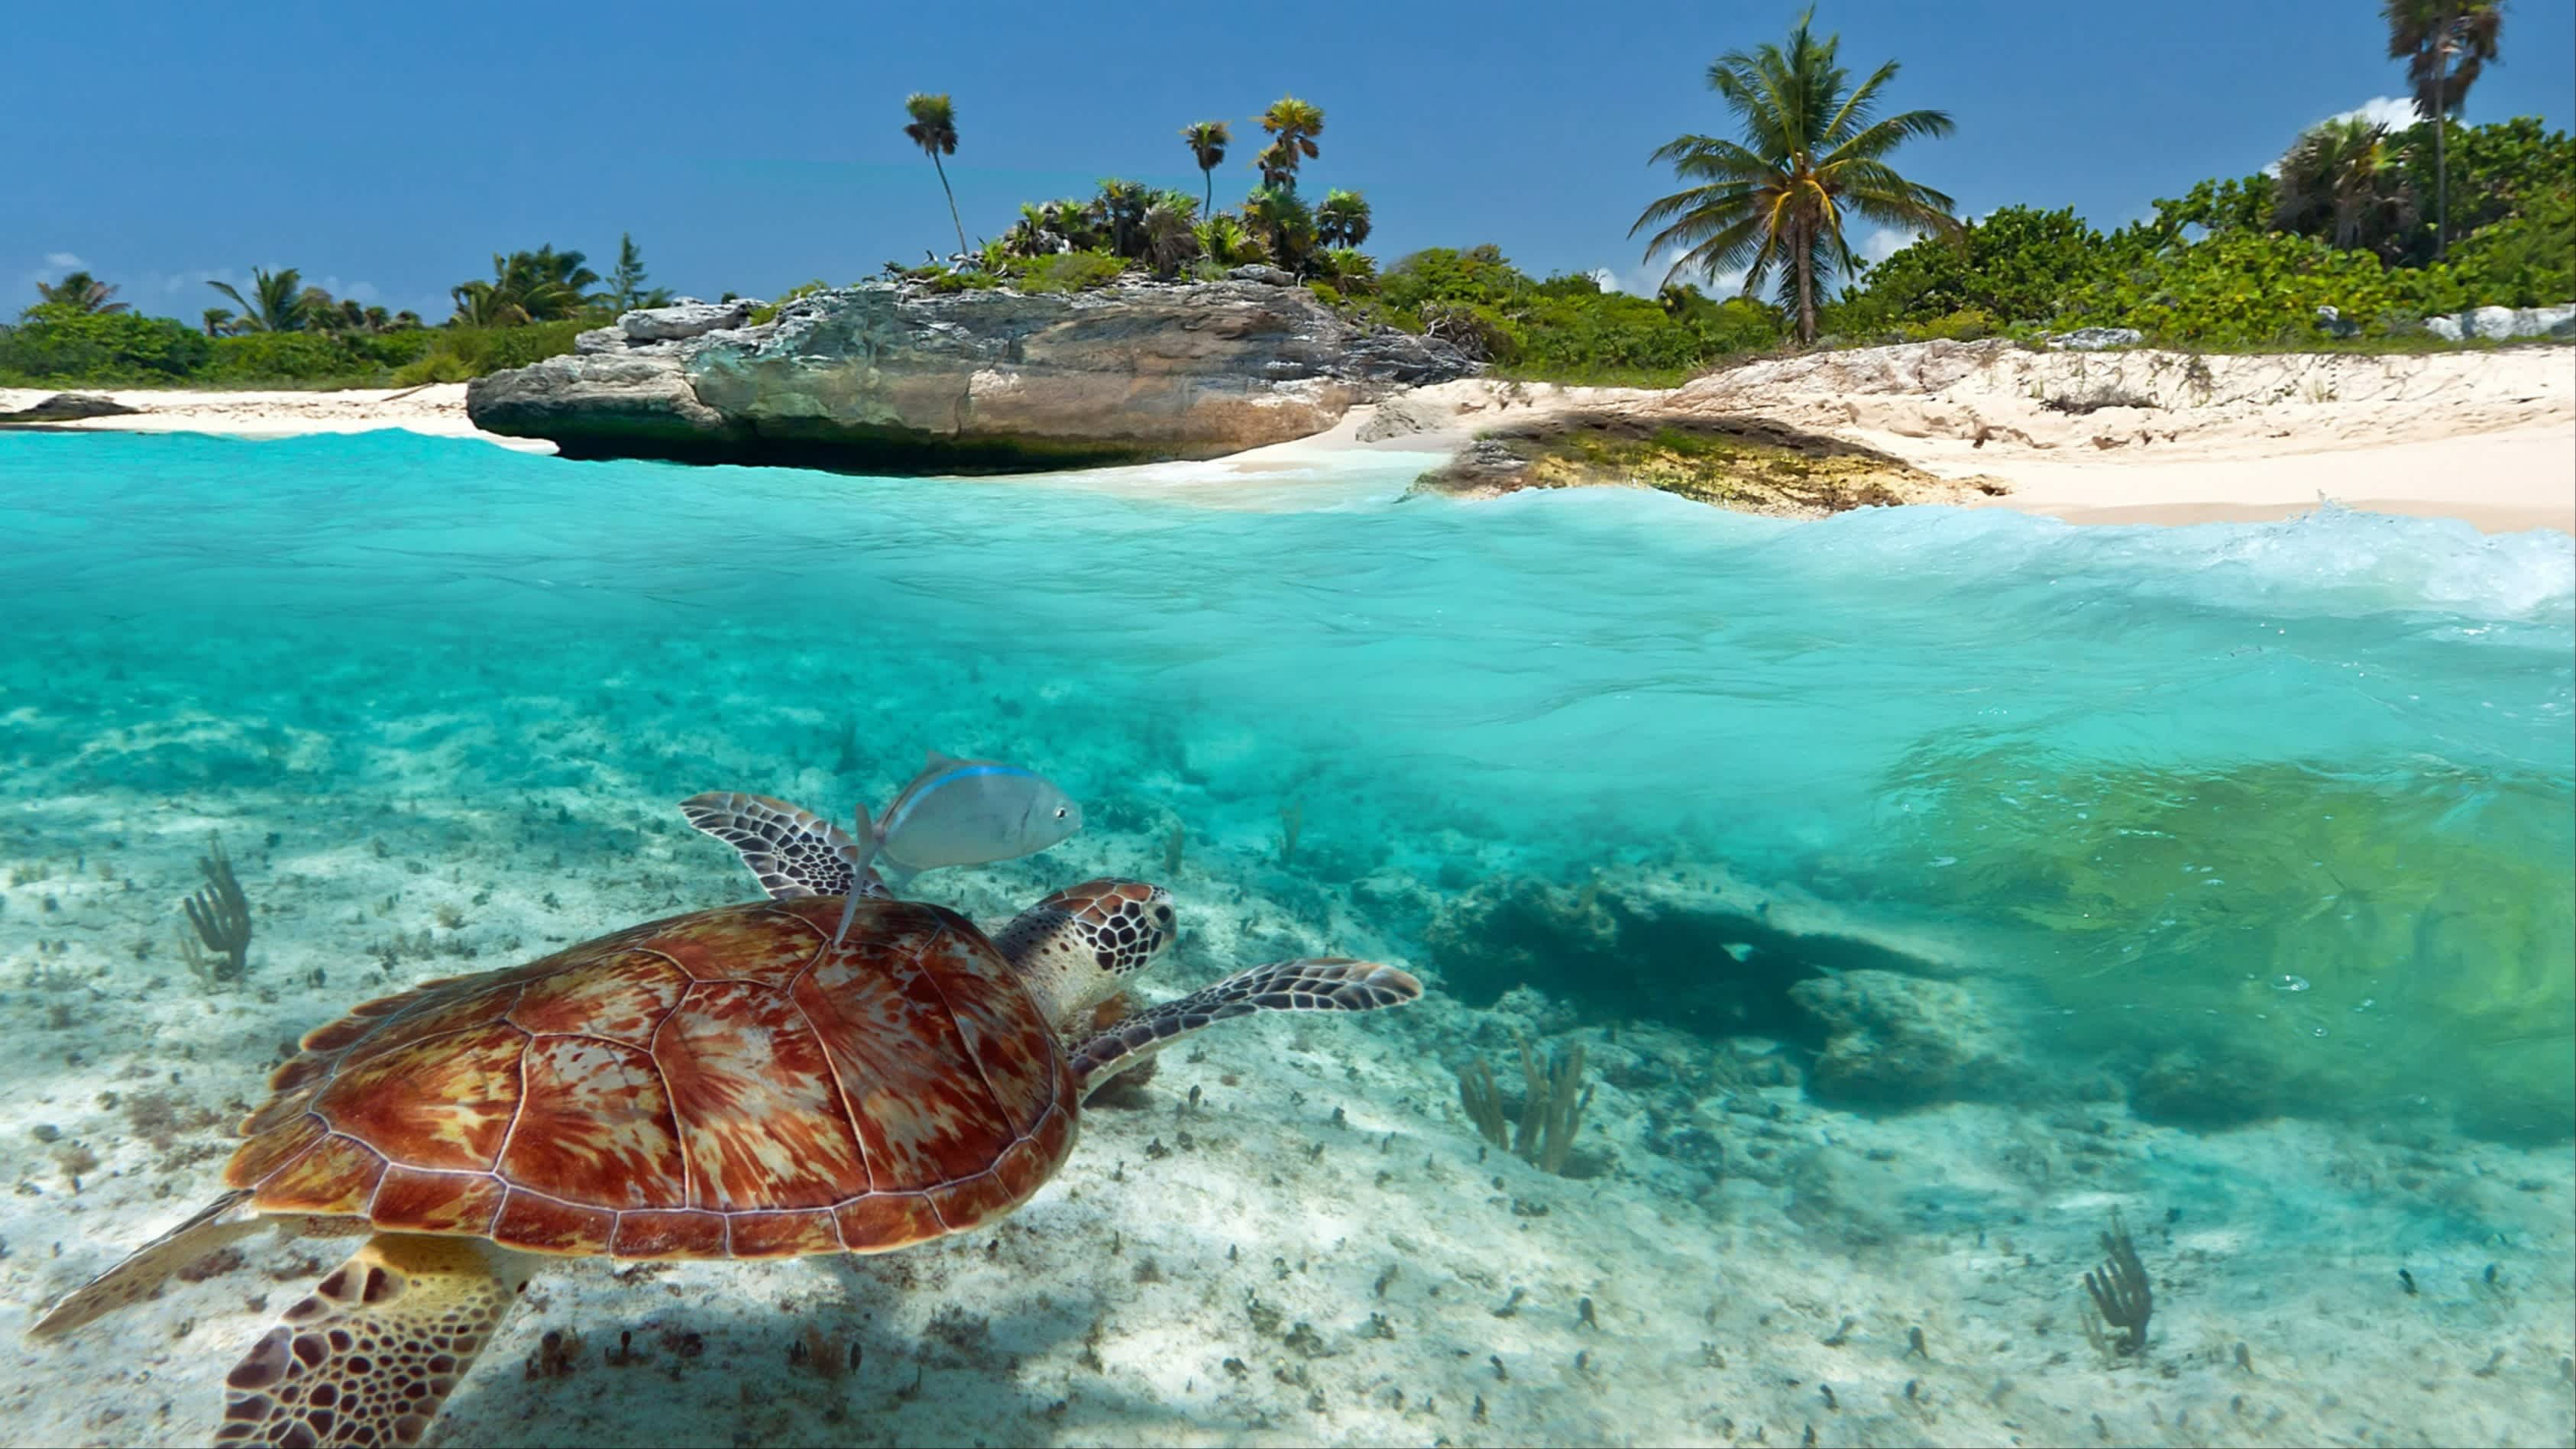 Karibik-Landschaft mit grüner Meeresschildkröte, in Mexiko, bei Sonnenschein und mit Blick auf das Meer sowie Palmen.